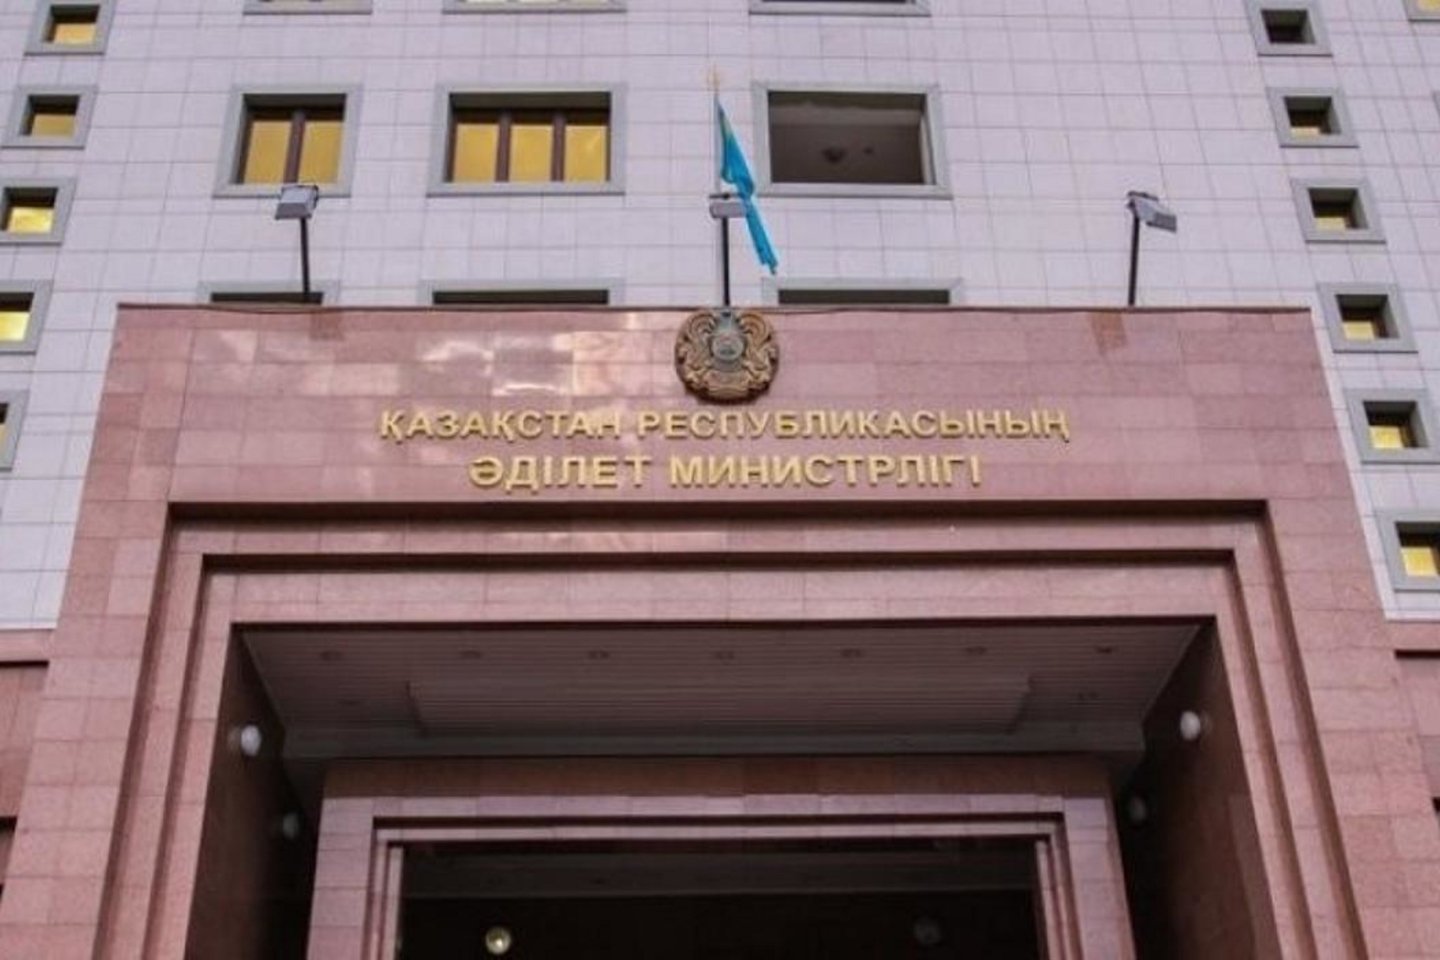 Новости Казахстана / Казахстанцы смогут получить копии документов регистрационного дела онлайн